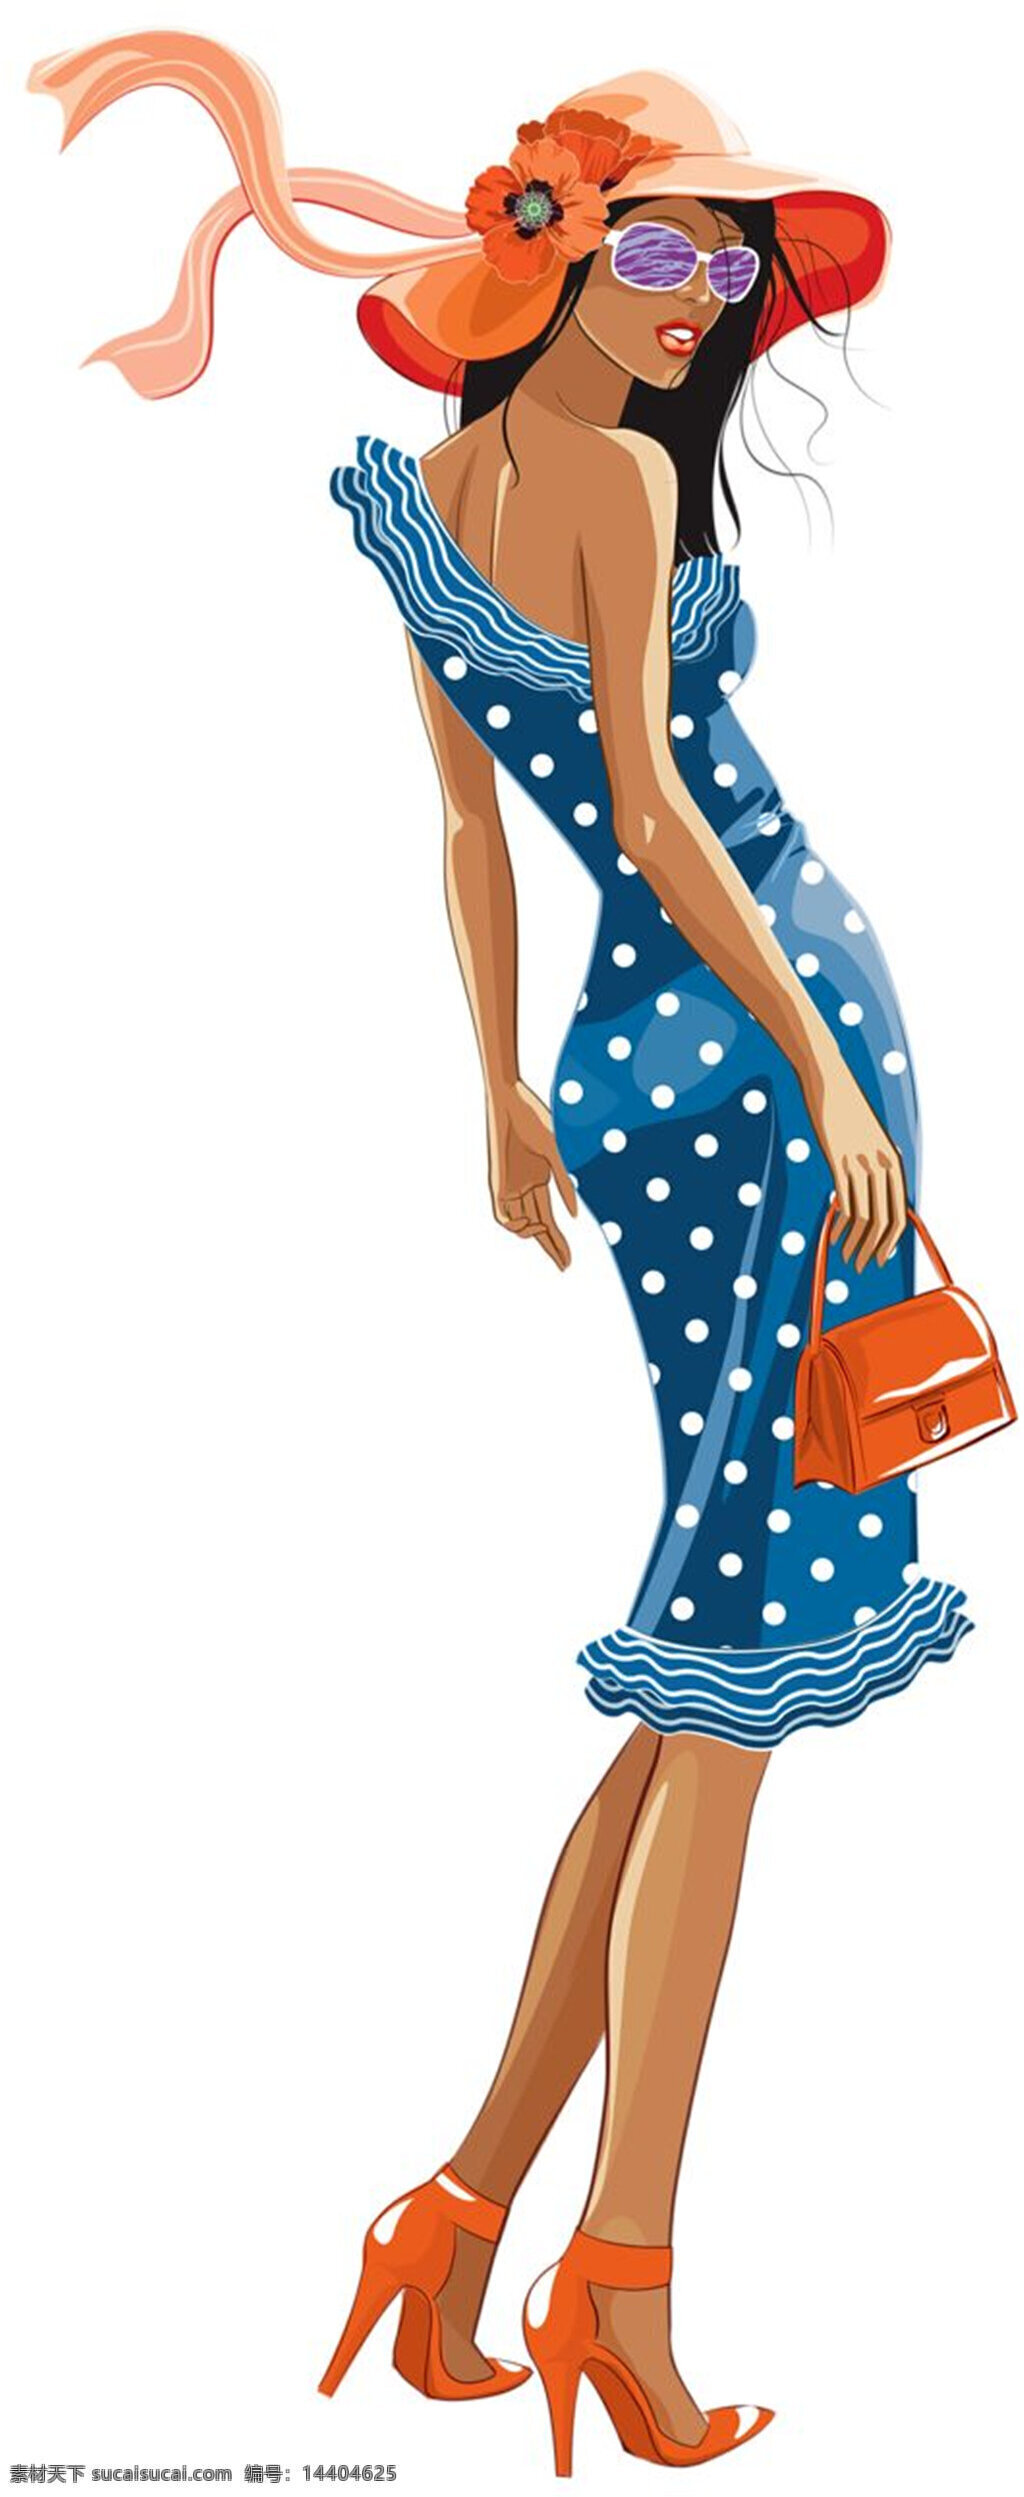 热带 风格 蓝色 斑点 裙子 女装 效果图 橙色包包 橙色帽子 橙色鞋子 服装设计 服装效果图